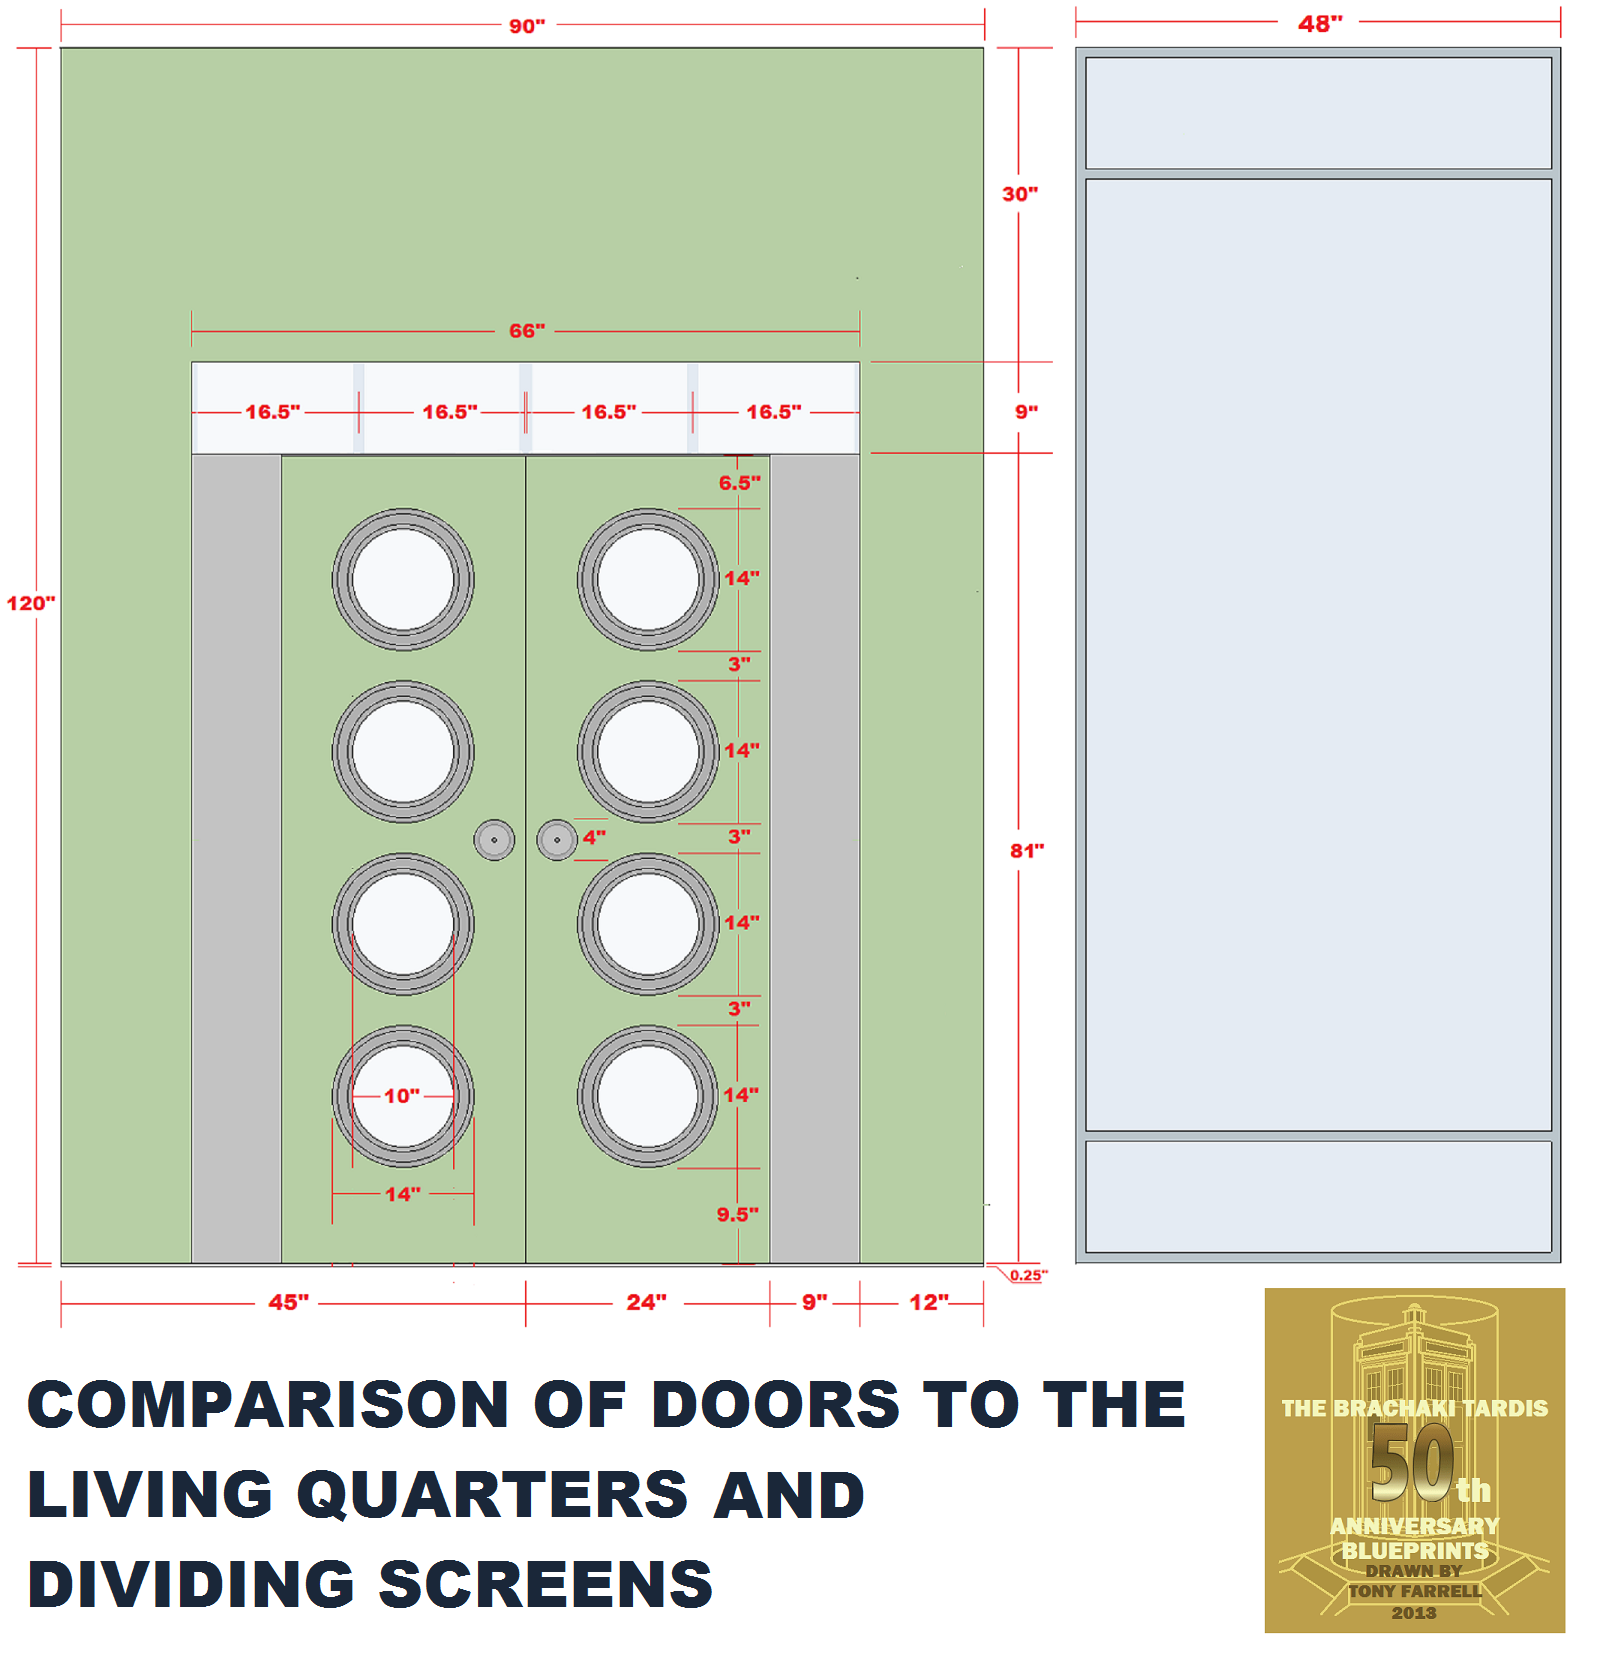 living quarters doors dividing screen comparison.png